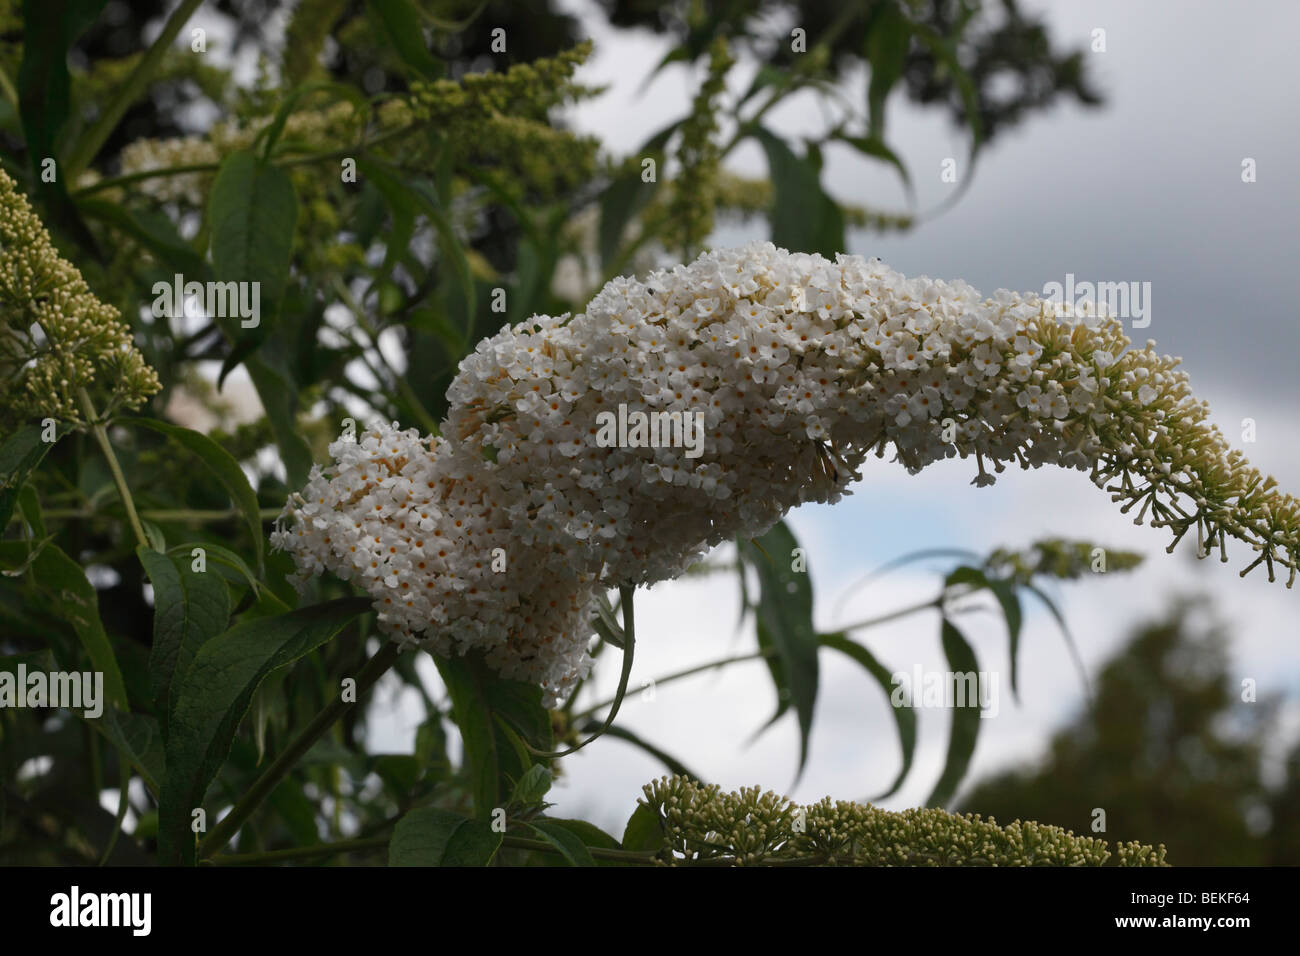 Buddliea (Buddleja davidii) white profusion close up of flowers Stock Photo